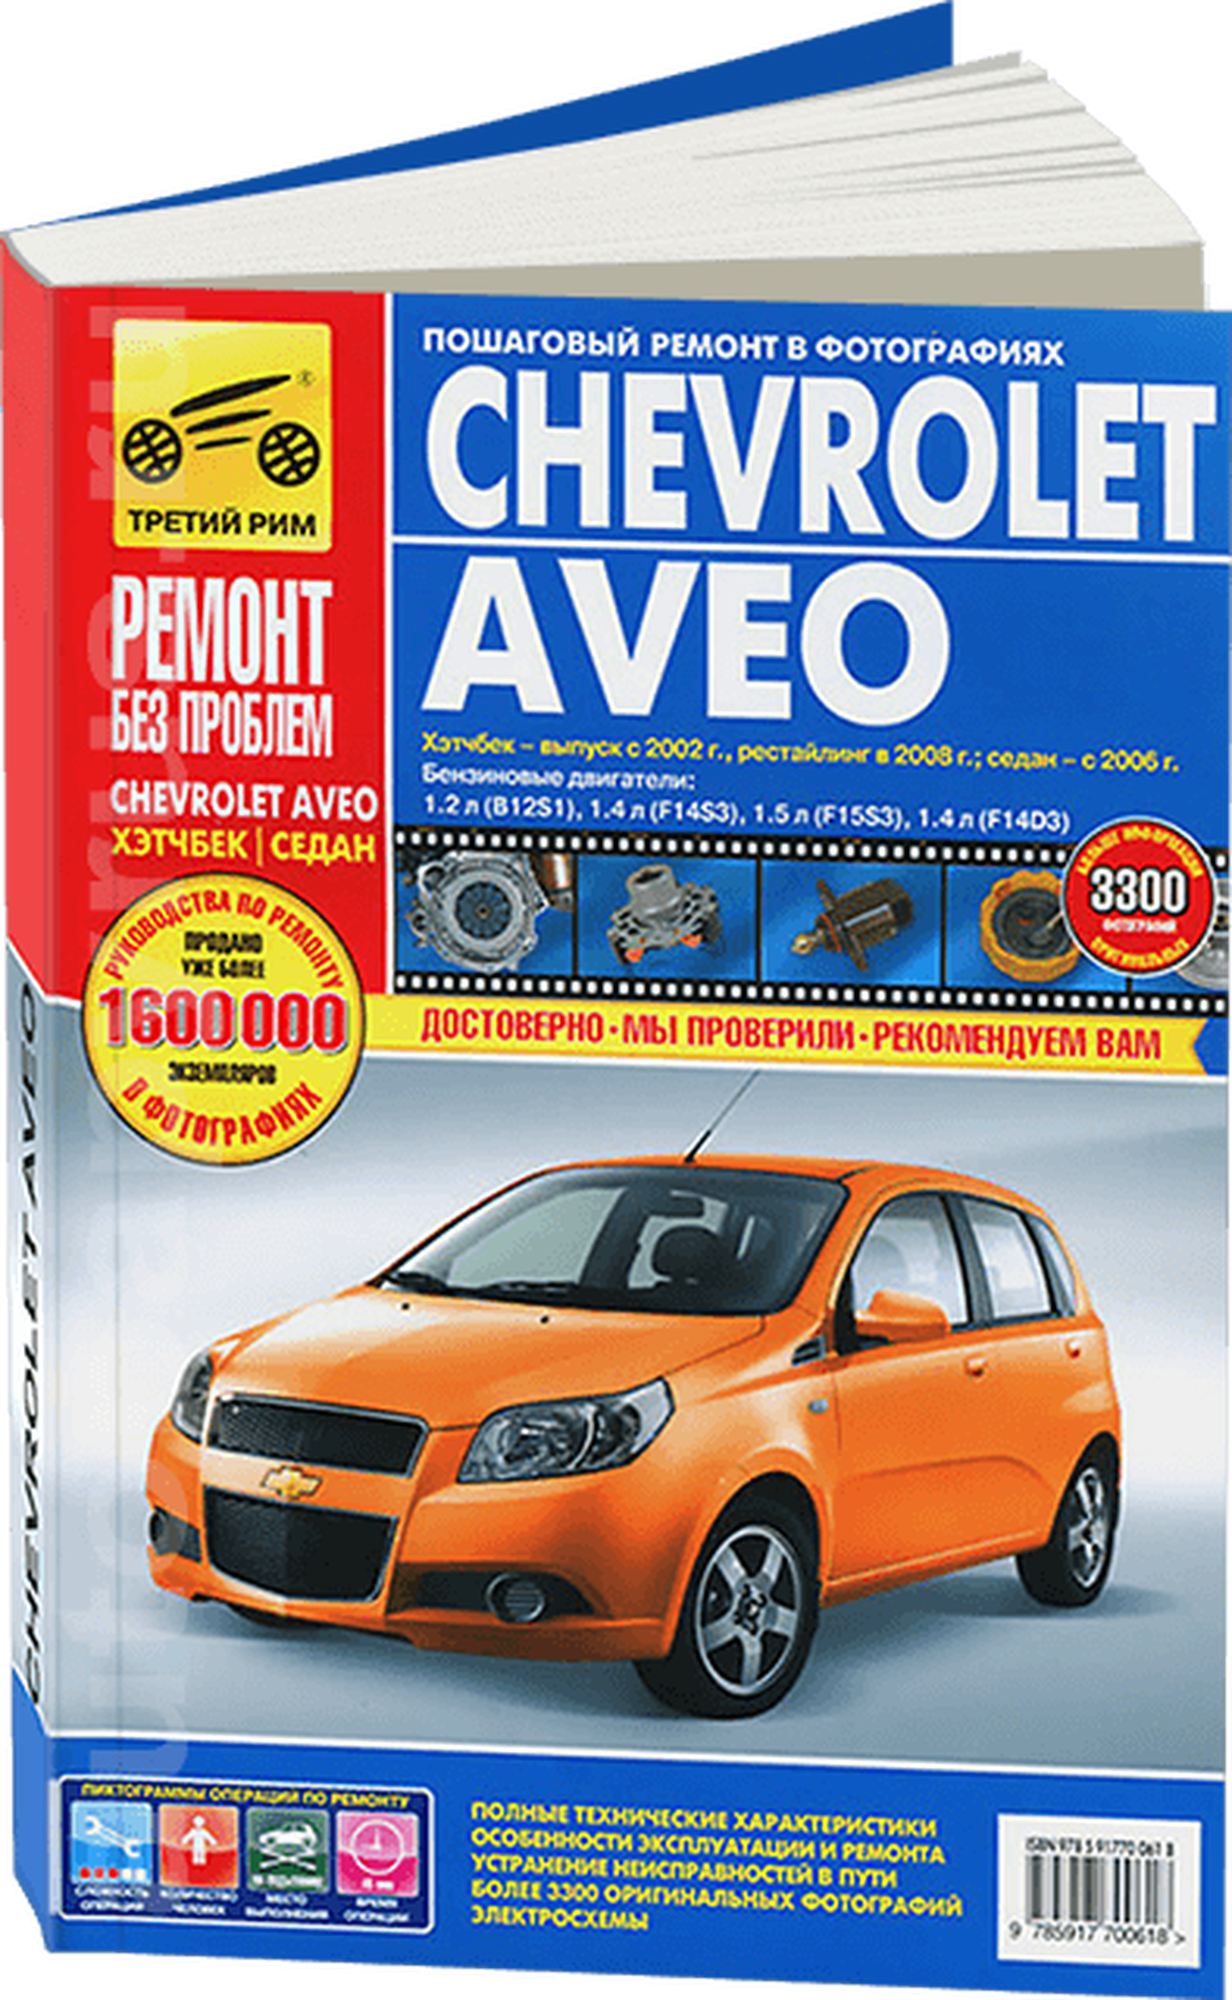 Chevrolet Aveo: Руководство по эксплуатации, техническому обслуживанию и ремонту - фото №2